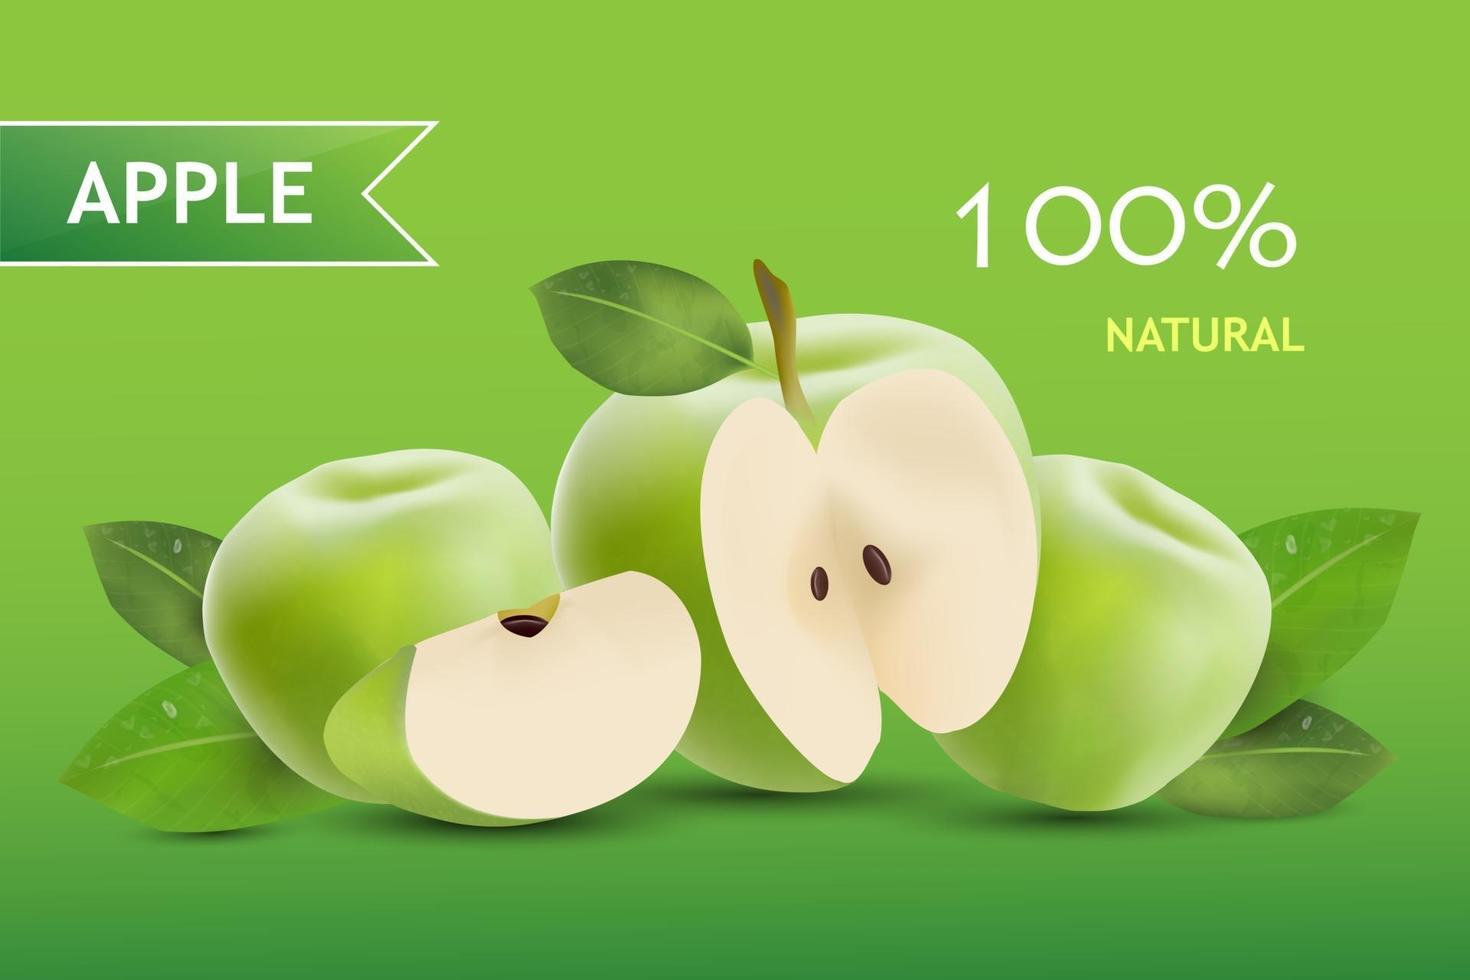 realistischer Apfel. Obst und frischer Apfelvektor. vektor